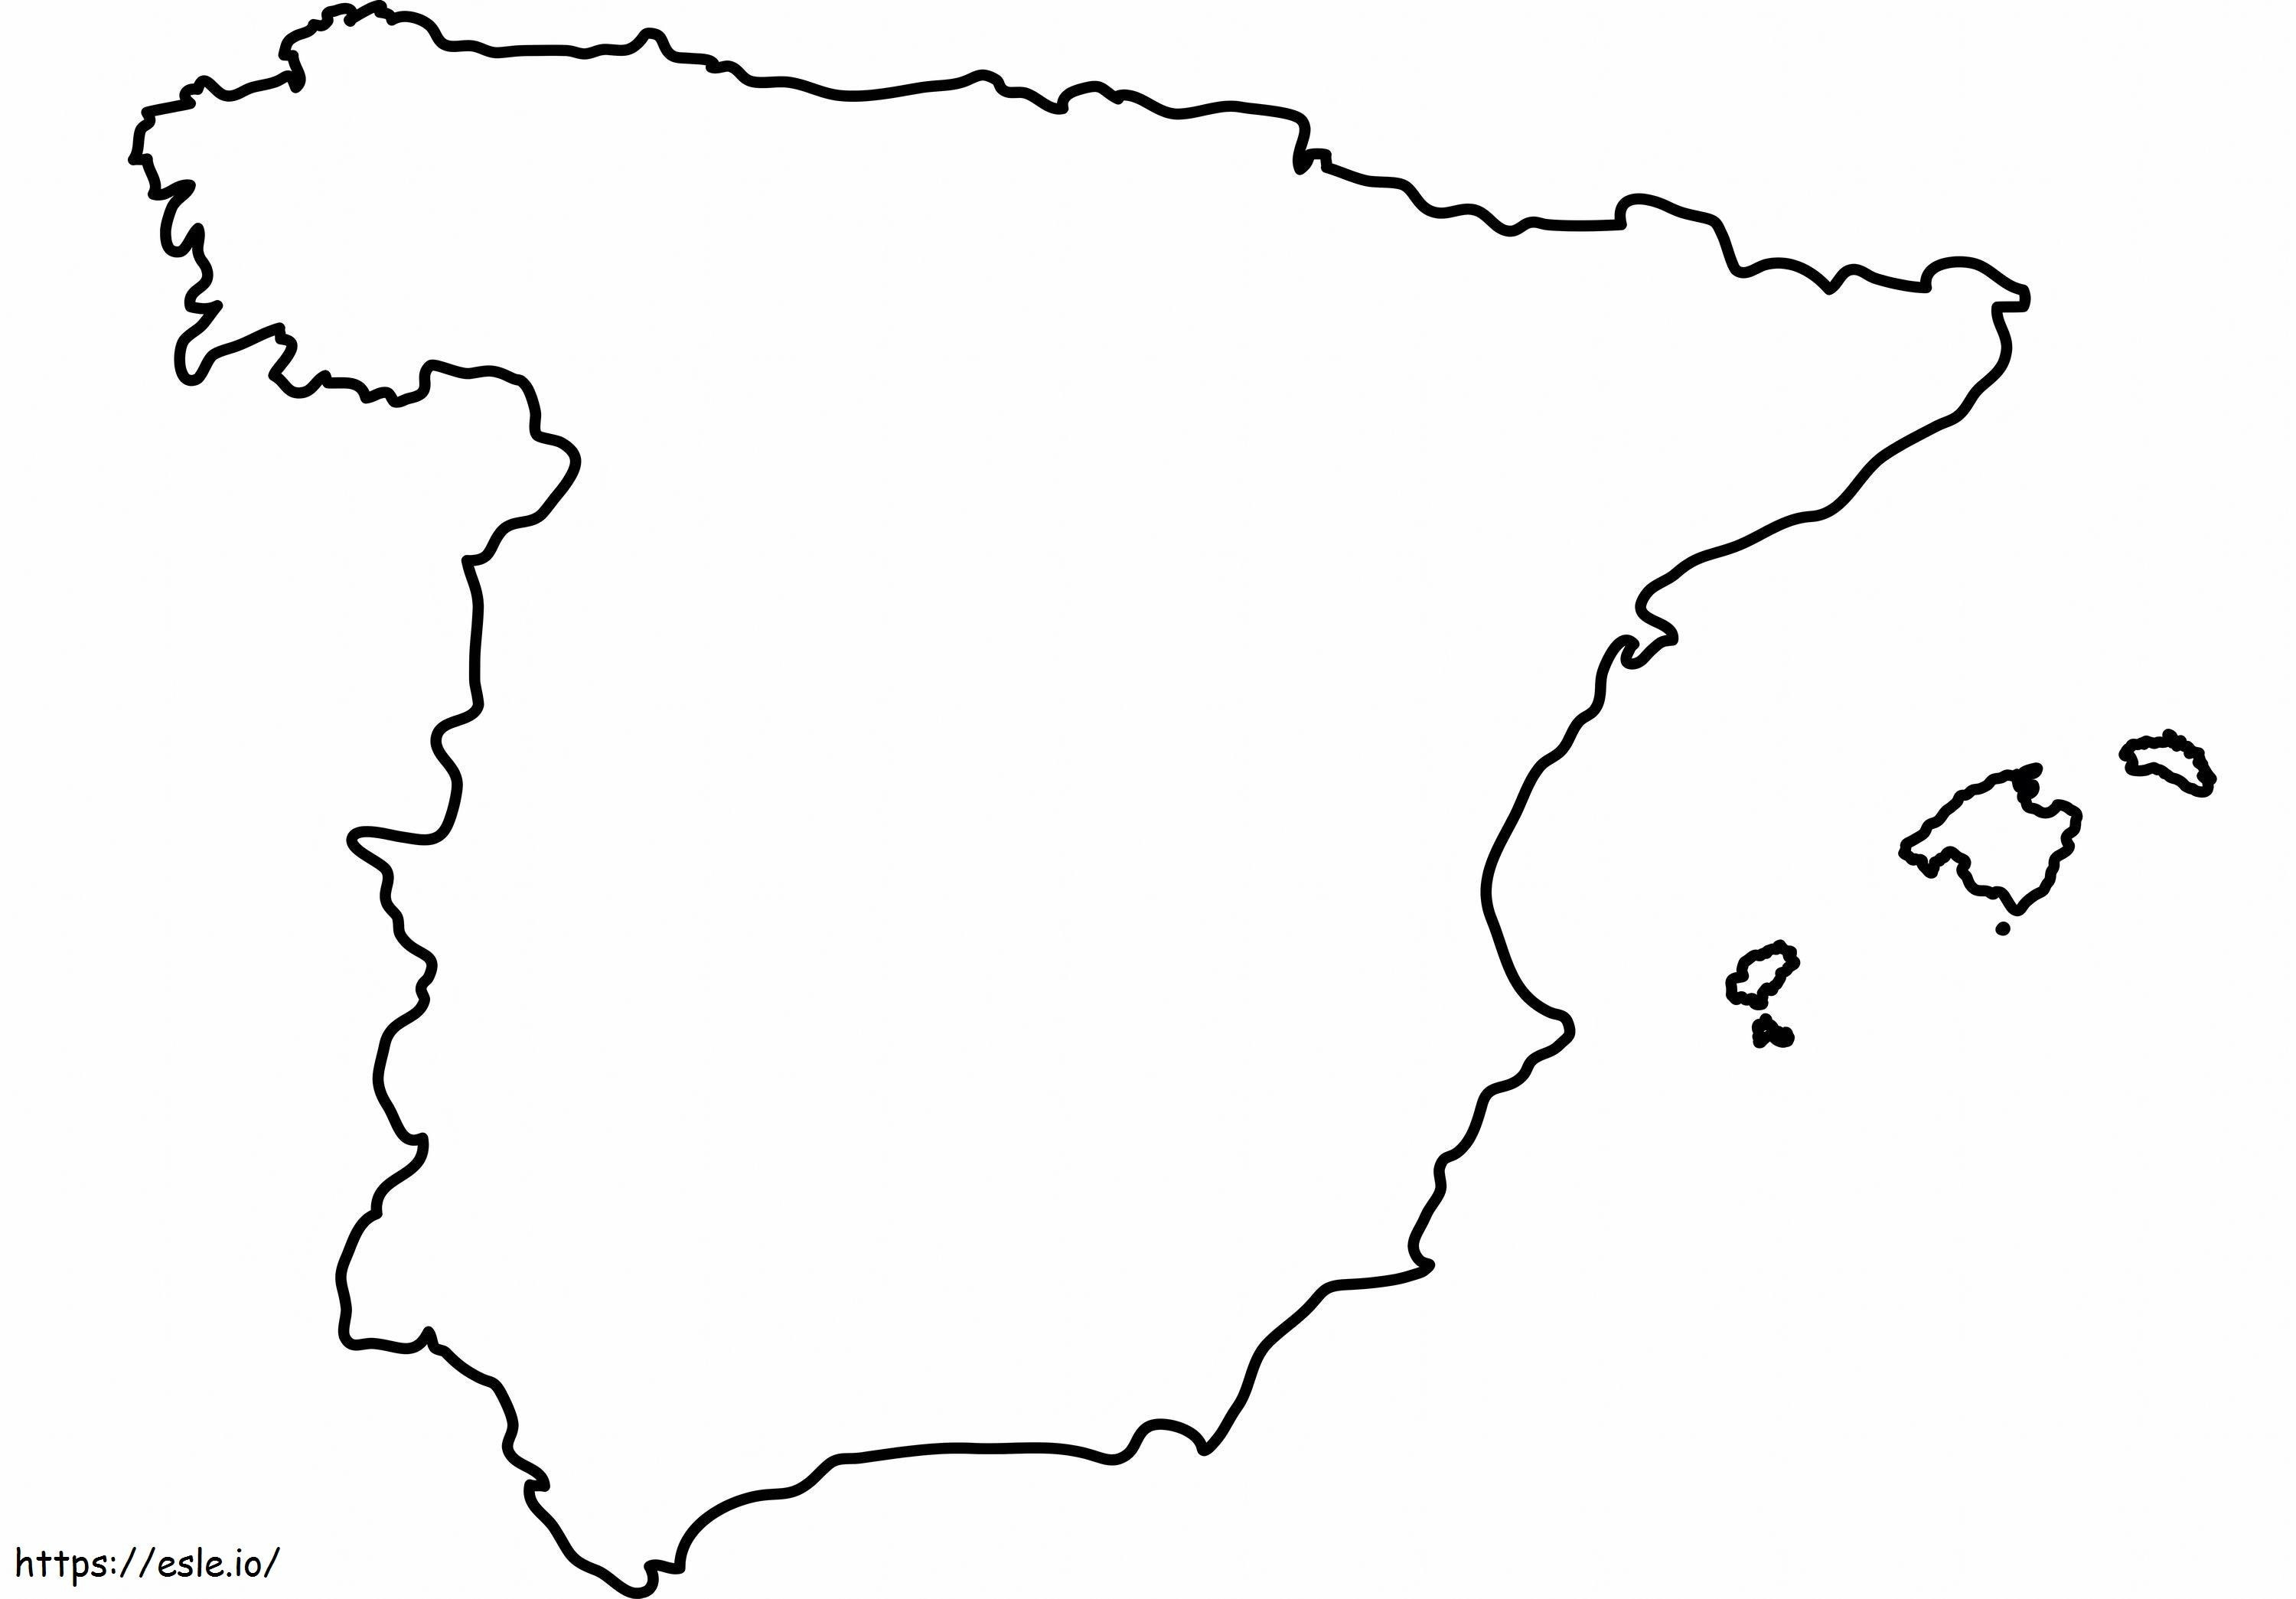 Leere Karte von Spanien zum Ausmalen ausmalbilder